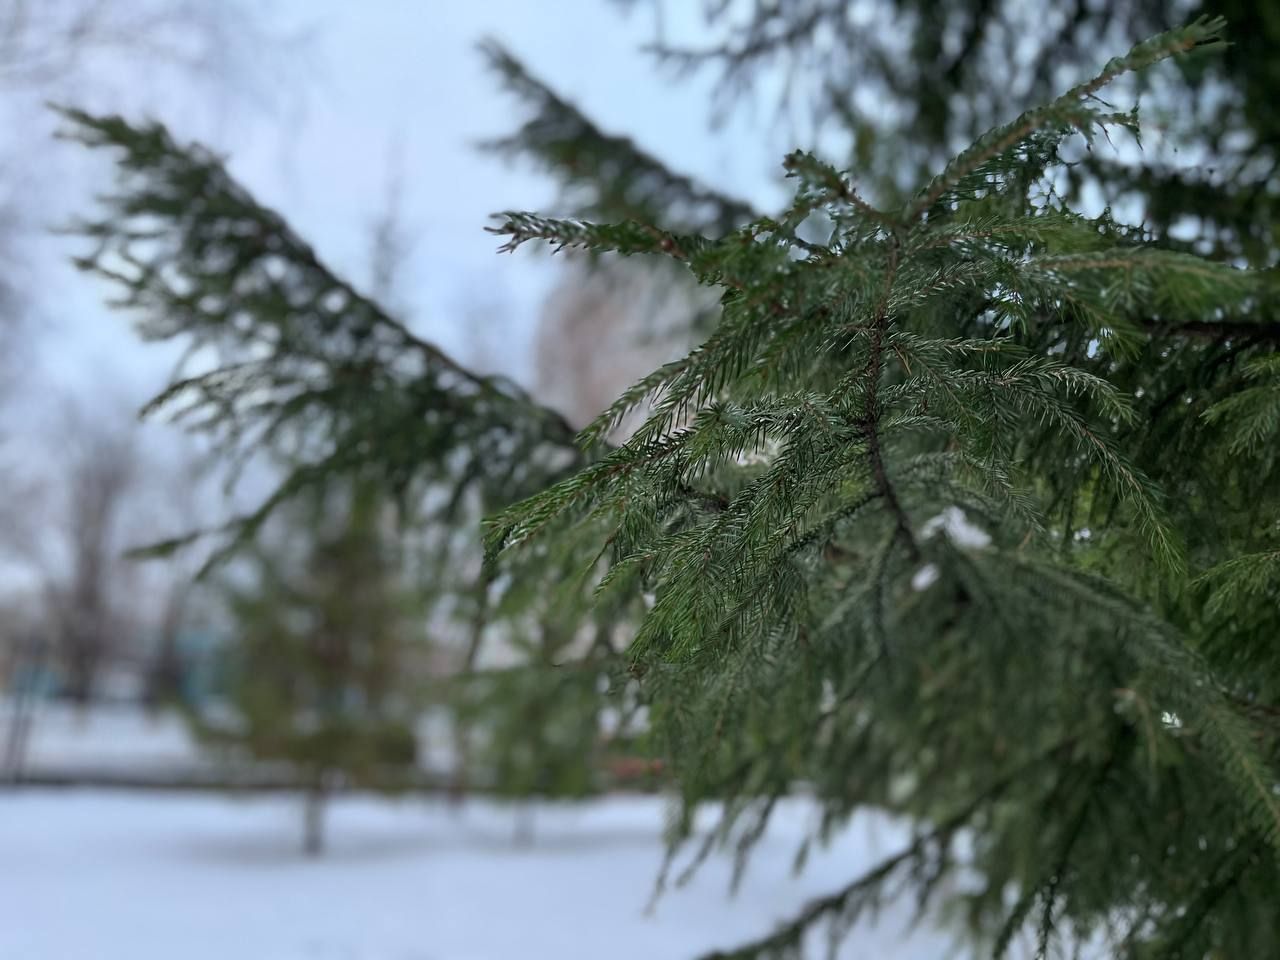 Жителей Татарстана предупредили о гололедице и снежном заносе 1 декабря